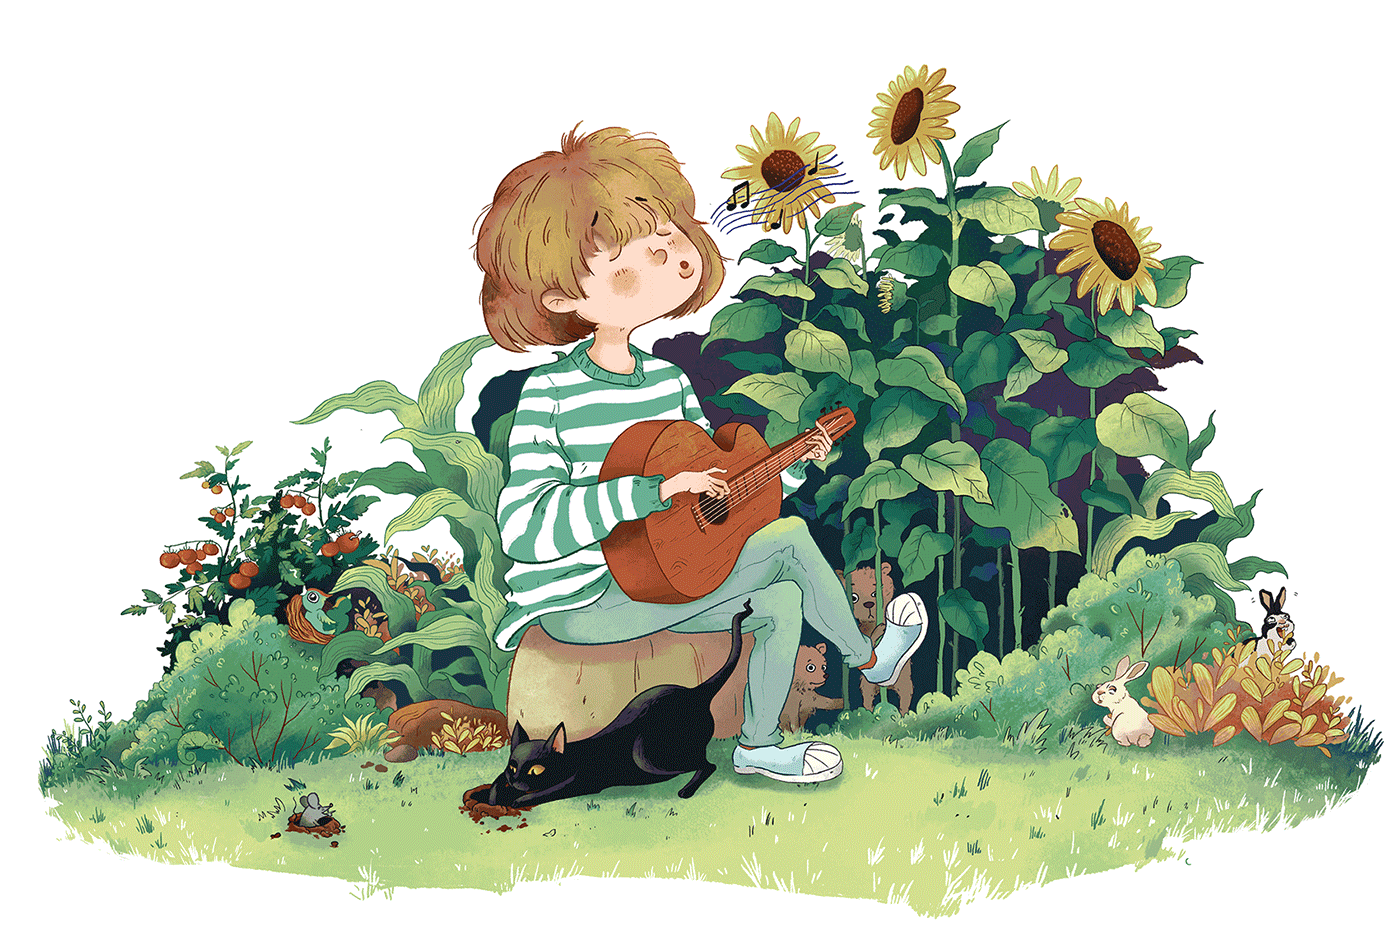 guitar sunflower playing guitar rabbit littlegreentea